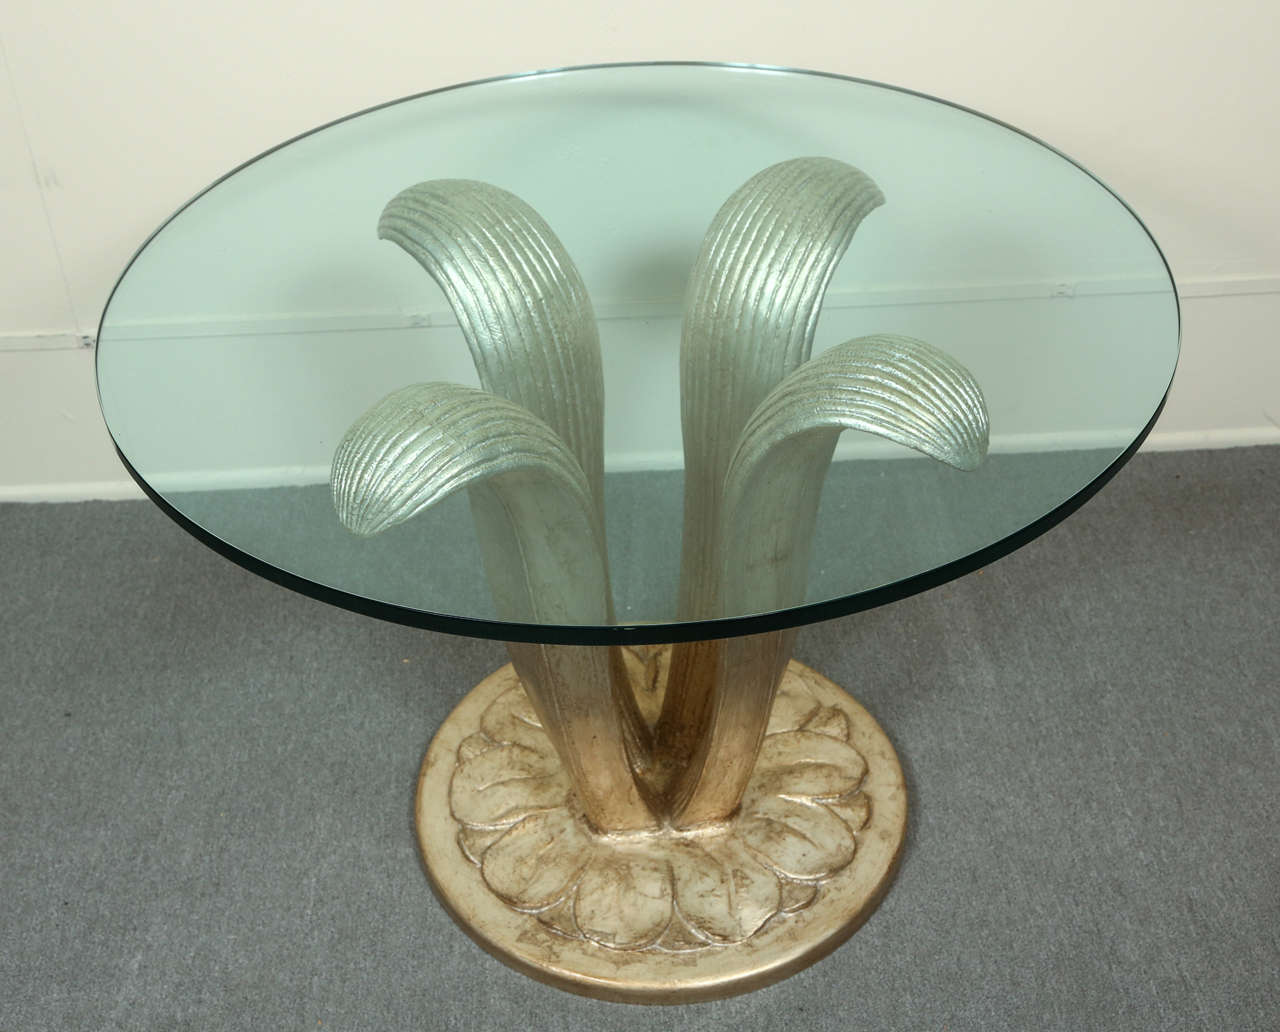 Belle grande table centrale avec une base en bois sculpté de formes gracieuses de feuilles.
La table est finie en feuille d'argent glacée avec des disques transparents qui soutiennent un dessus en verre de 3/4